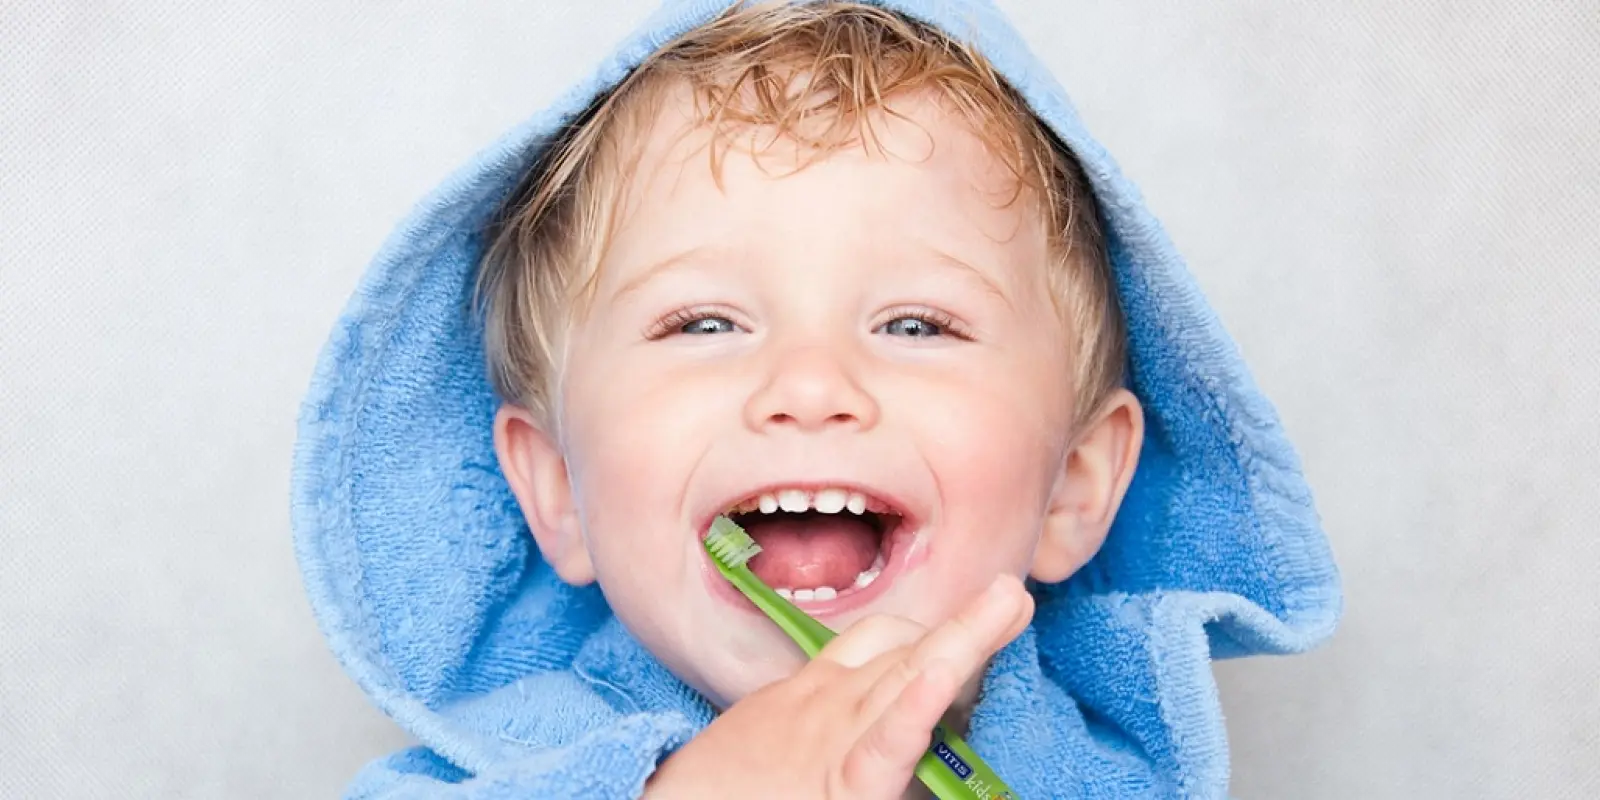 manchas blancas en los dientes en niños - Qué significa manchas blancas en los dientes en los niños